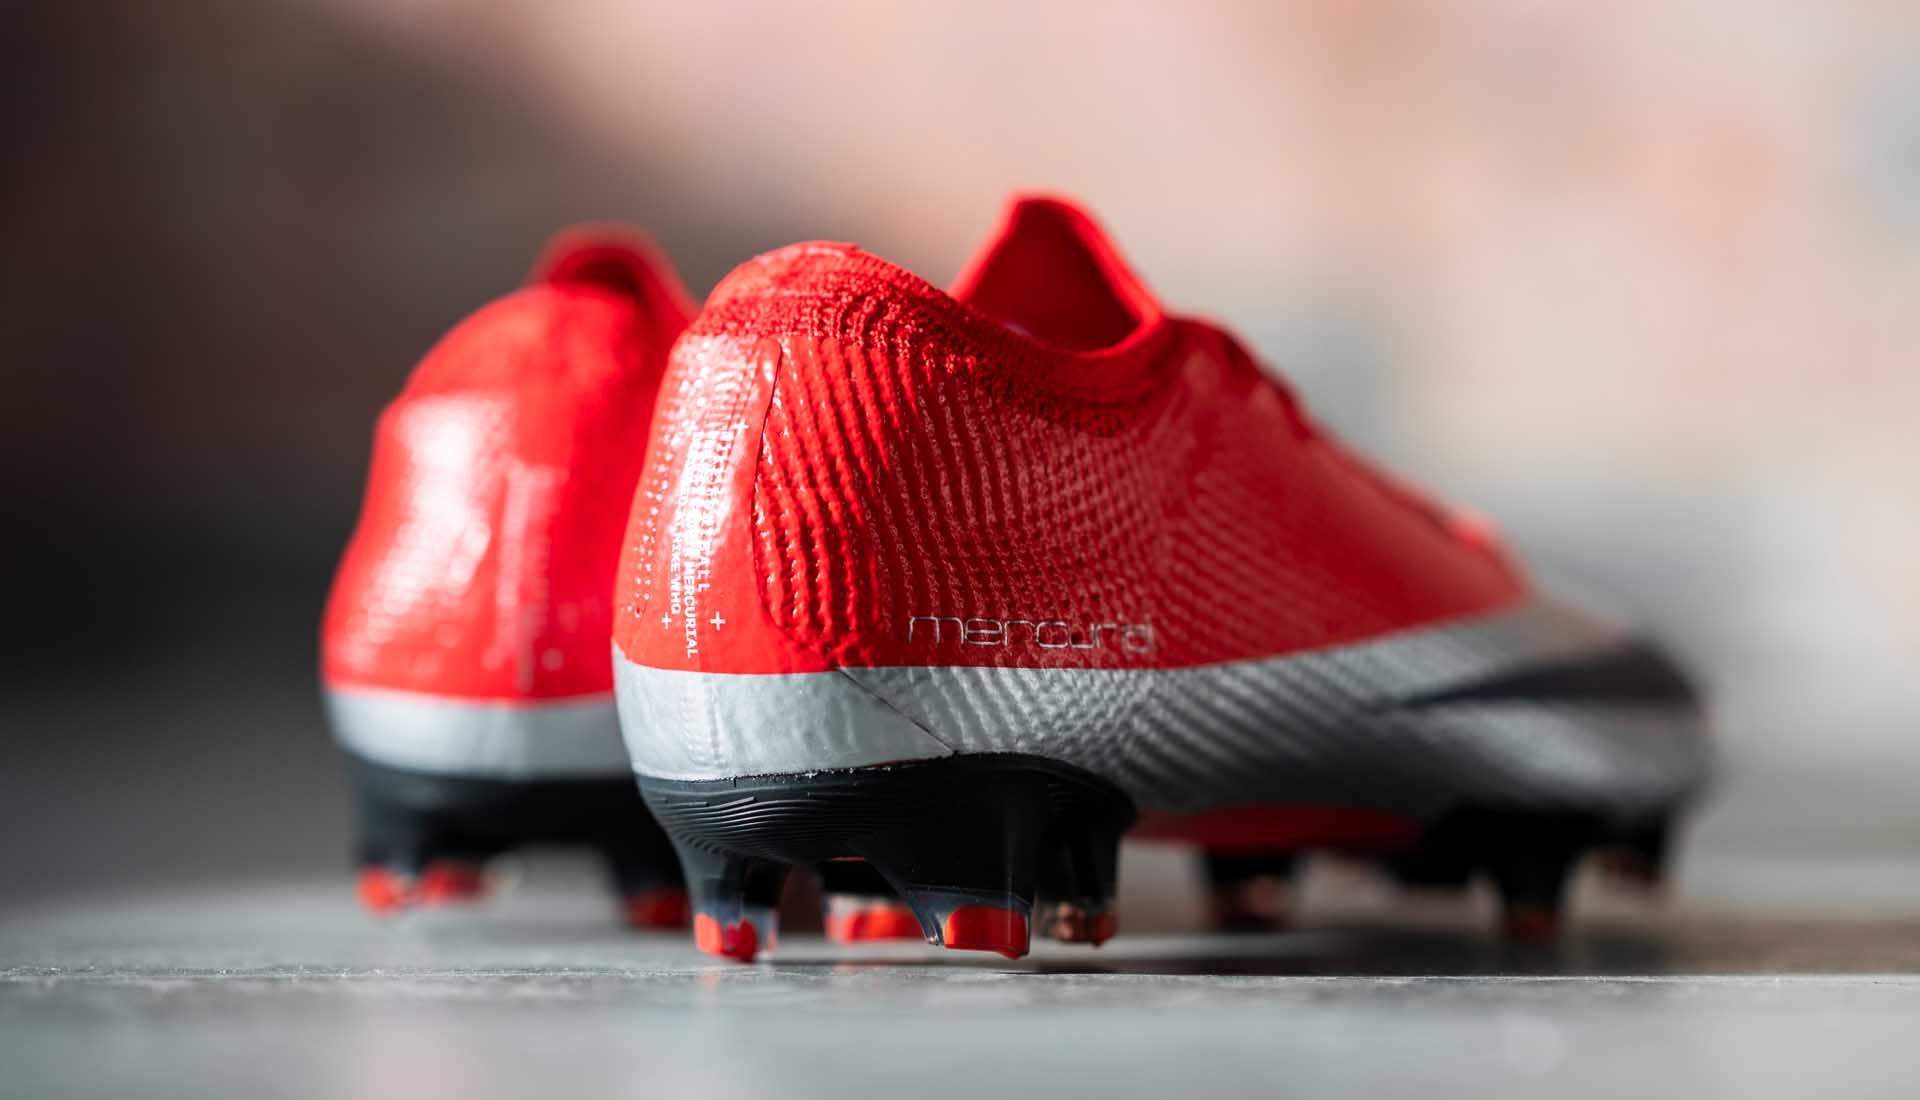 Lót giày Vapor 13 Elite được sử dụng công nghệ Nike Grip giúp chống trơn trượt trong giày